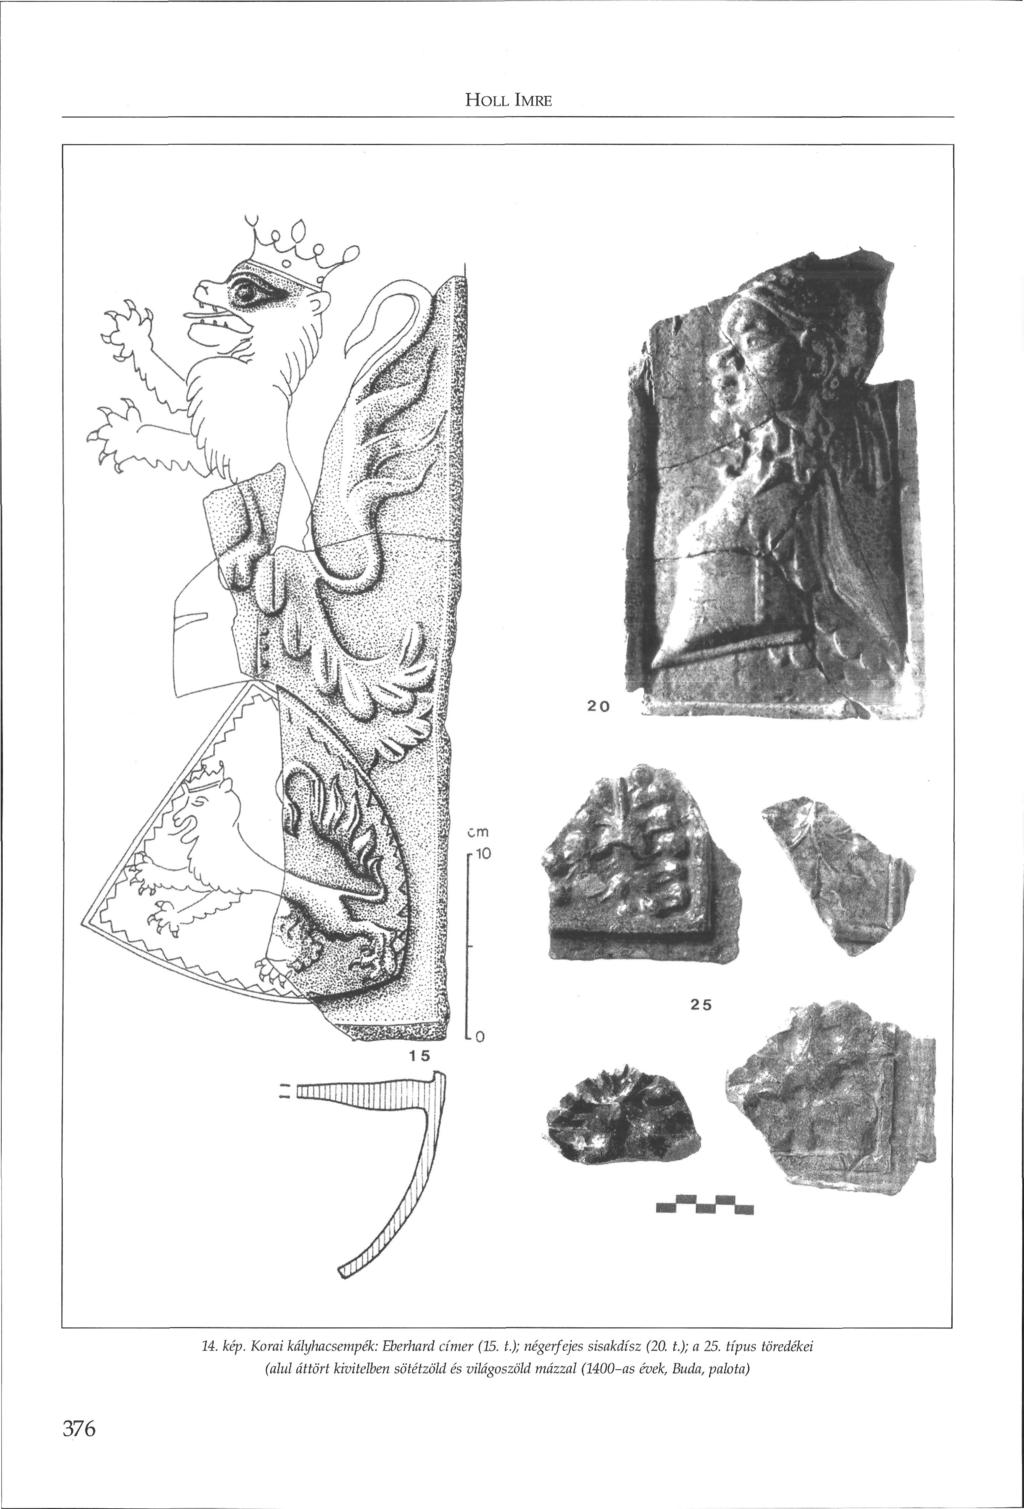 HoLL IMRE 14. kép. Korai kályhacsempék: Eberhard címer (15. t.); negerfejes sisakdísz (20. t.); a 25.